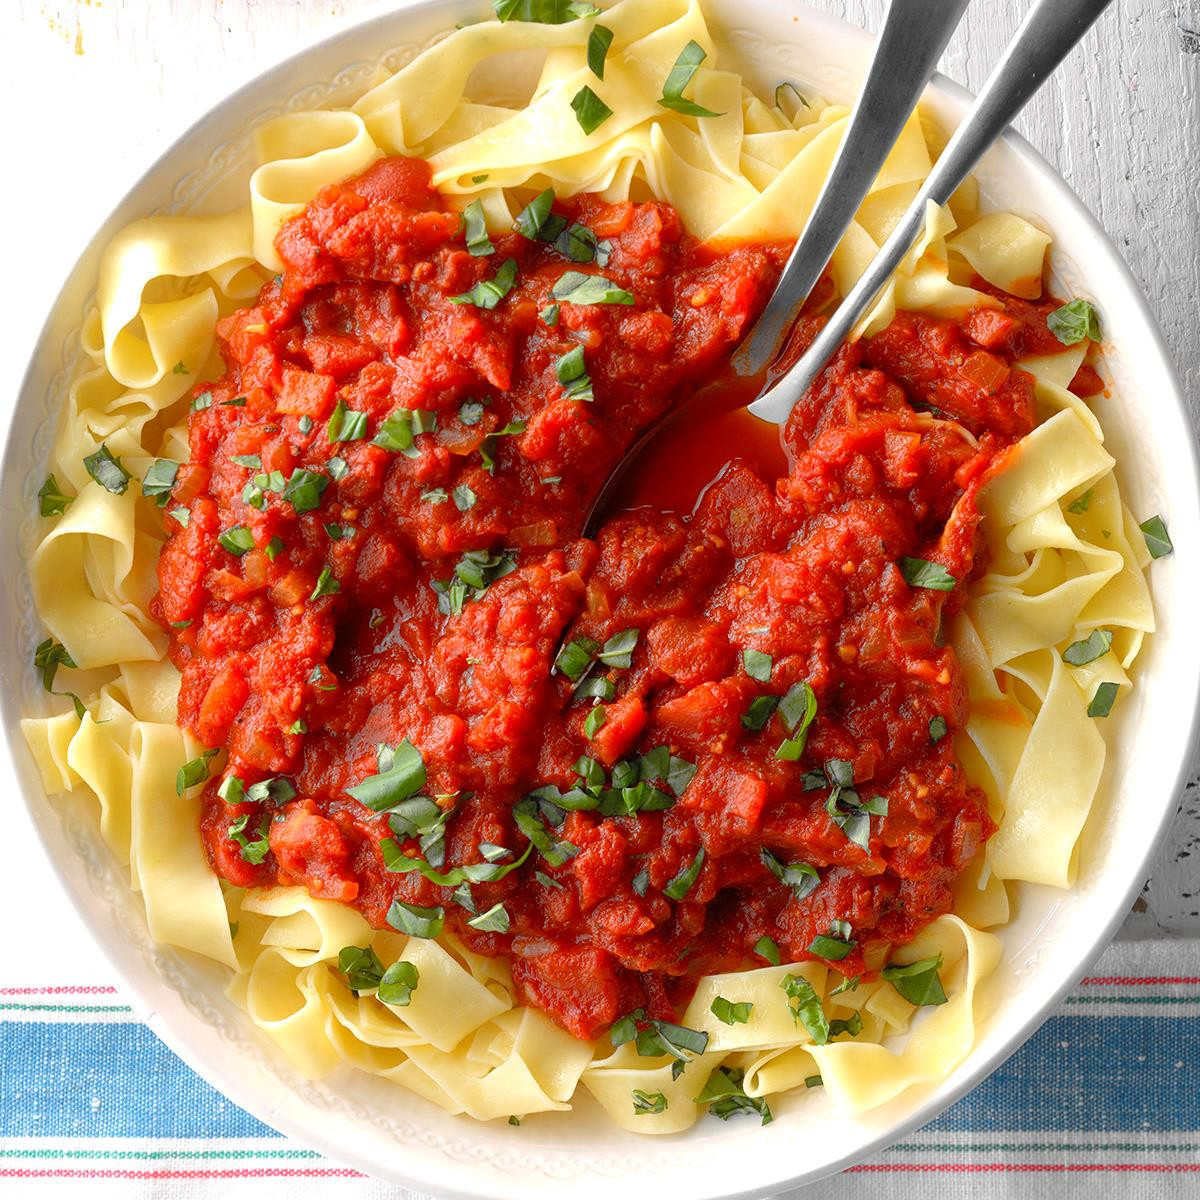 Spaghetti Sauce Recipes
 Homemade Meatless Spaghetti Sauce Recipe